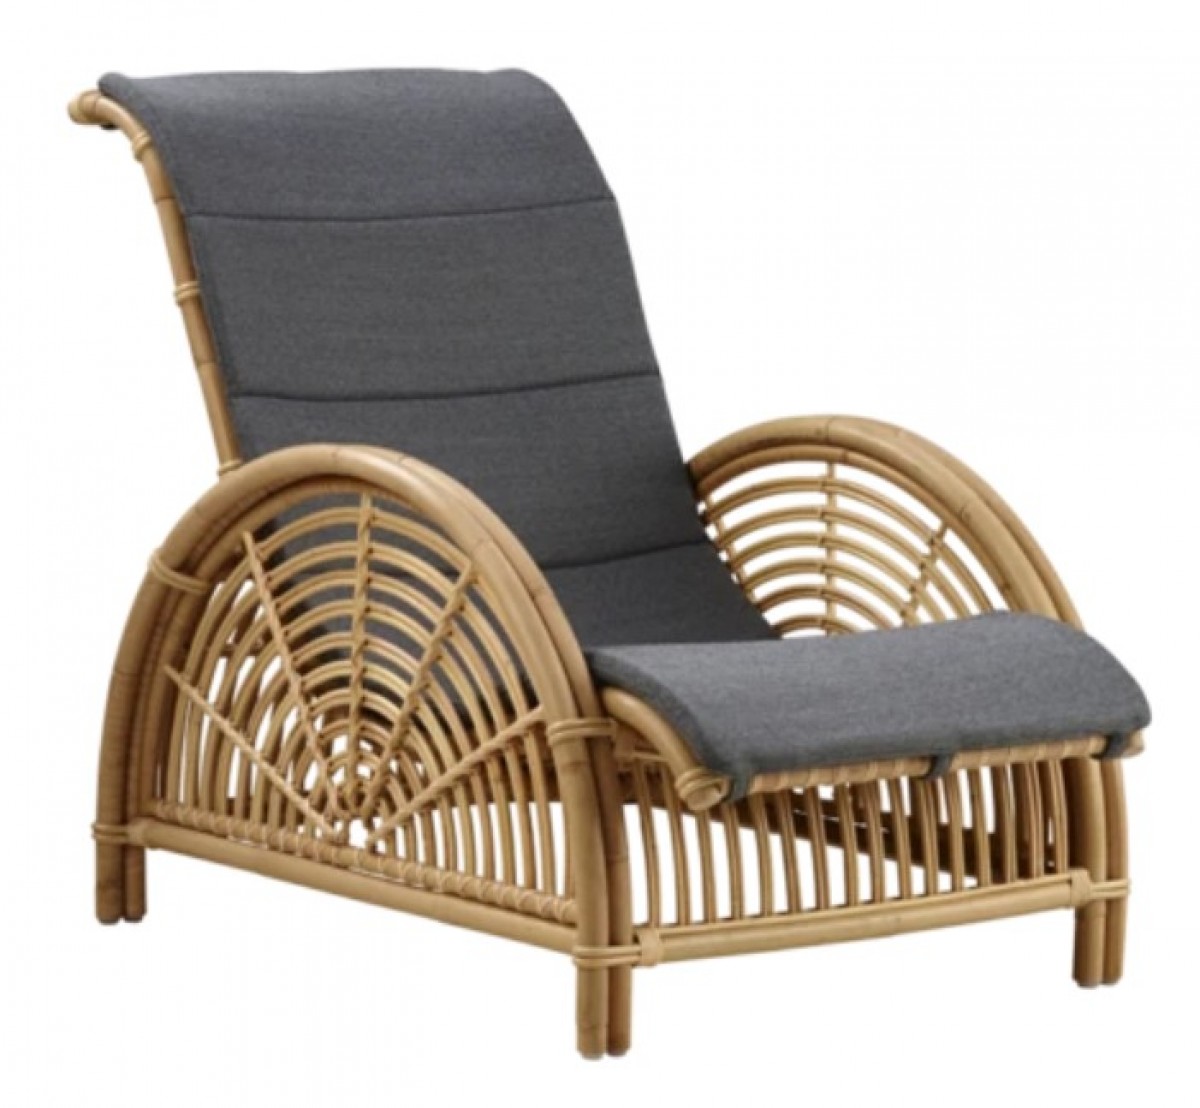 Arne Jacobsen Paris Chair with Cushion